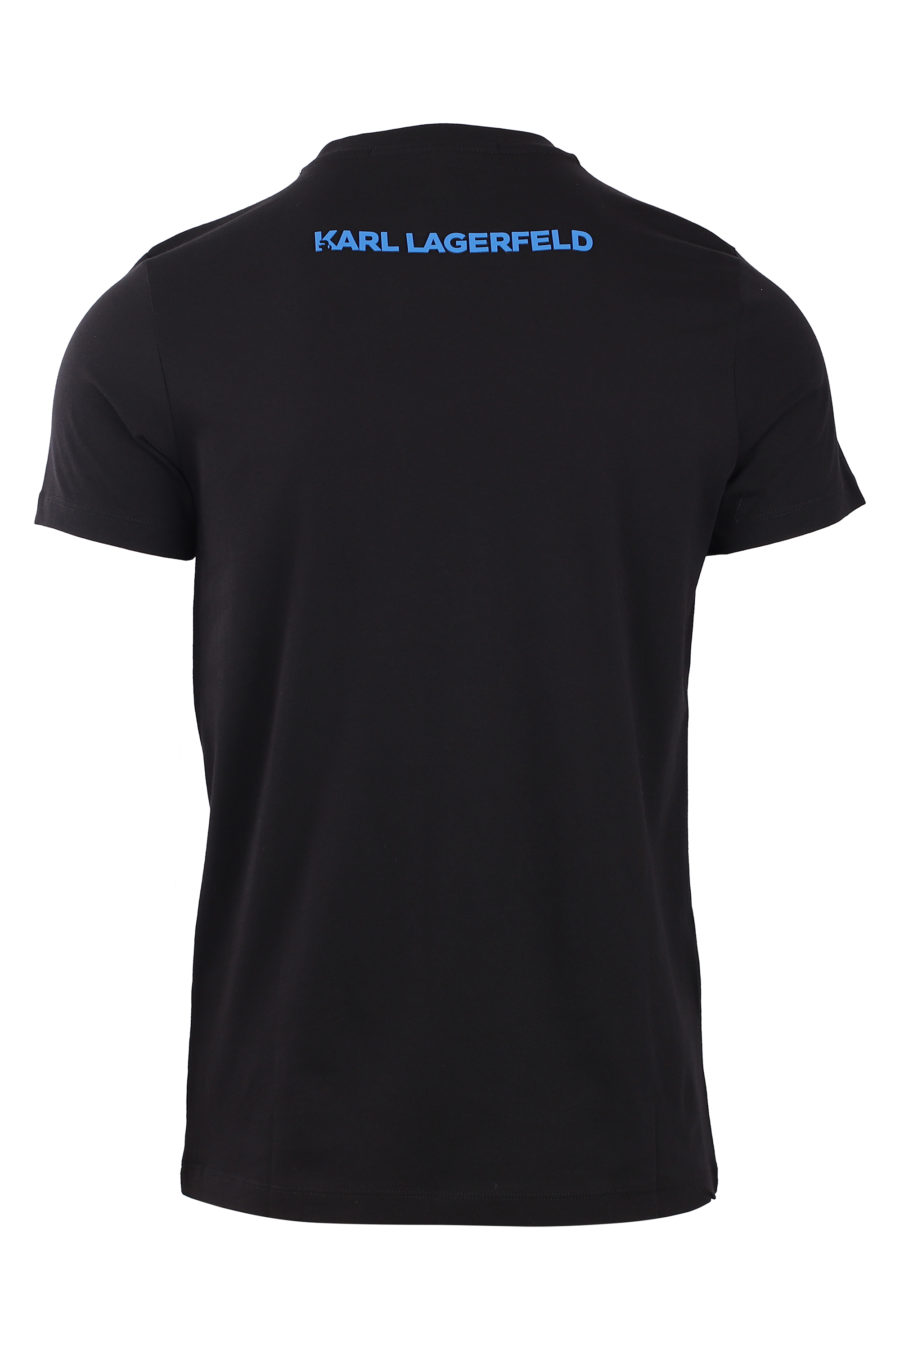 Camiseta negra con logo en silueta azul - IMG 0793